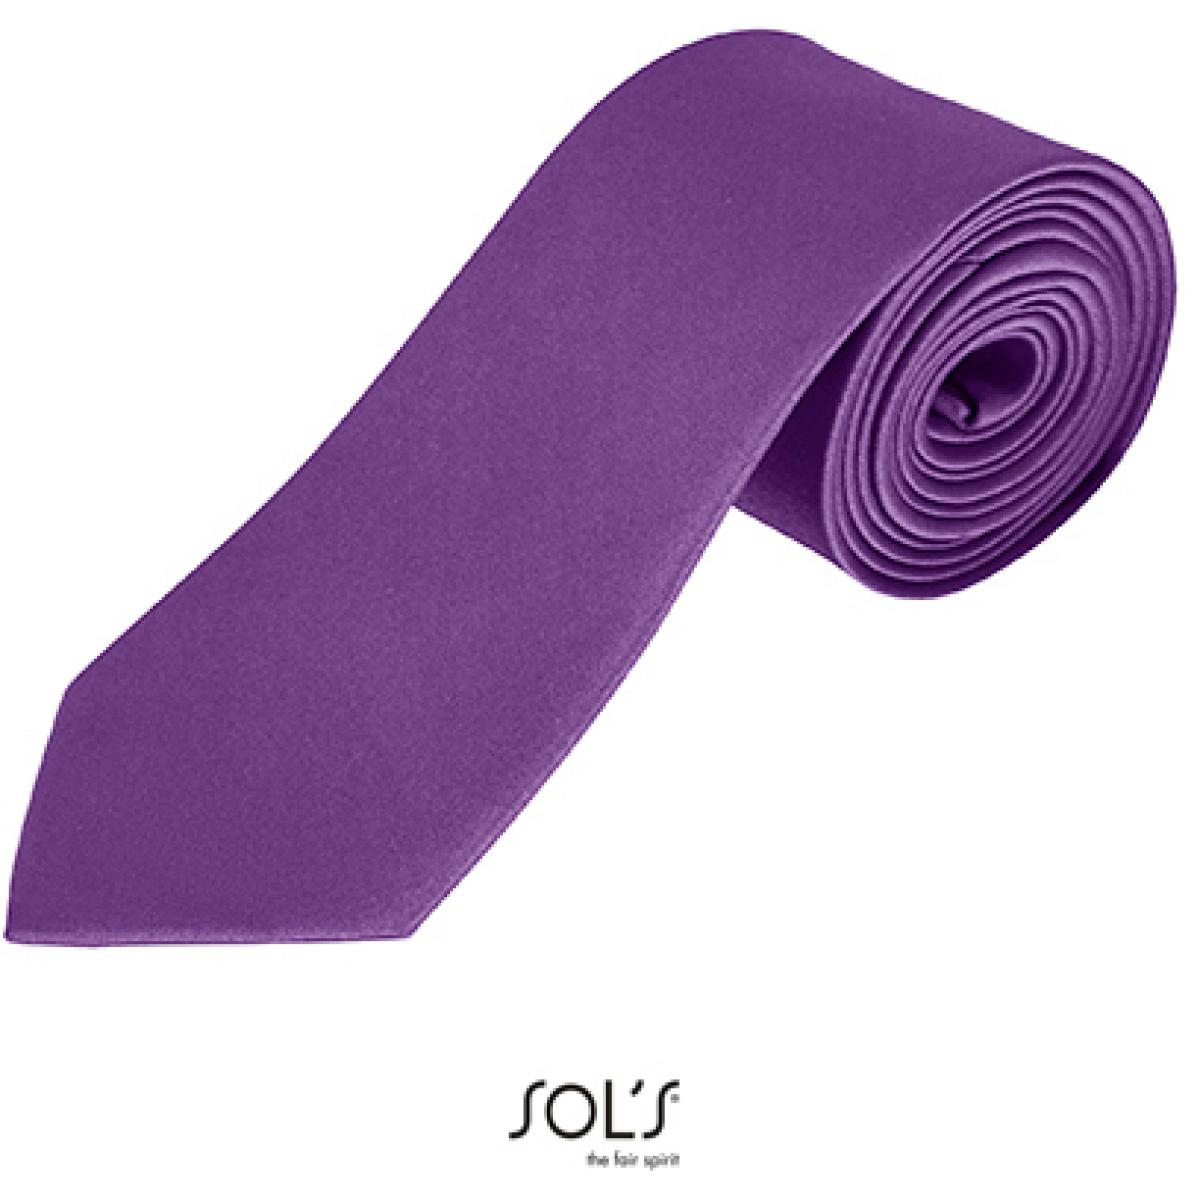 Hersteller: SOLs Herstellernummer: 02932 Artikelbezeichnung: Herren Krawatte Garner Tie - Länge: 150 cm, Breite: 7 cm" Farbe: Dark Purple